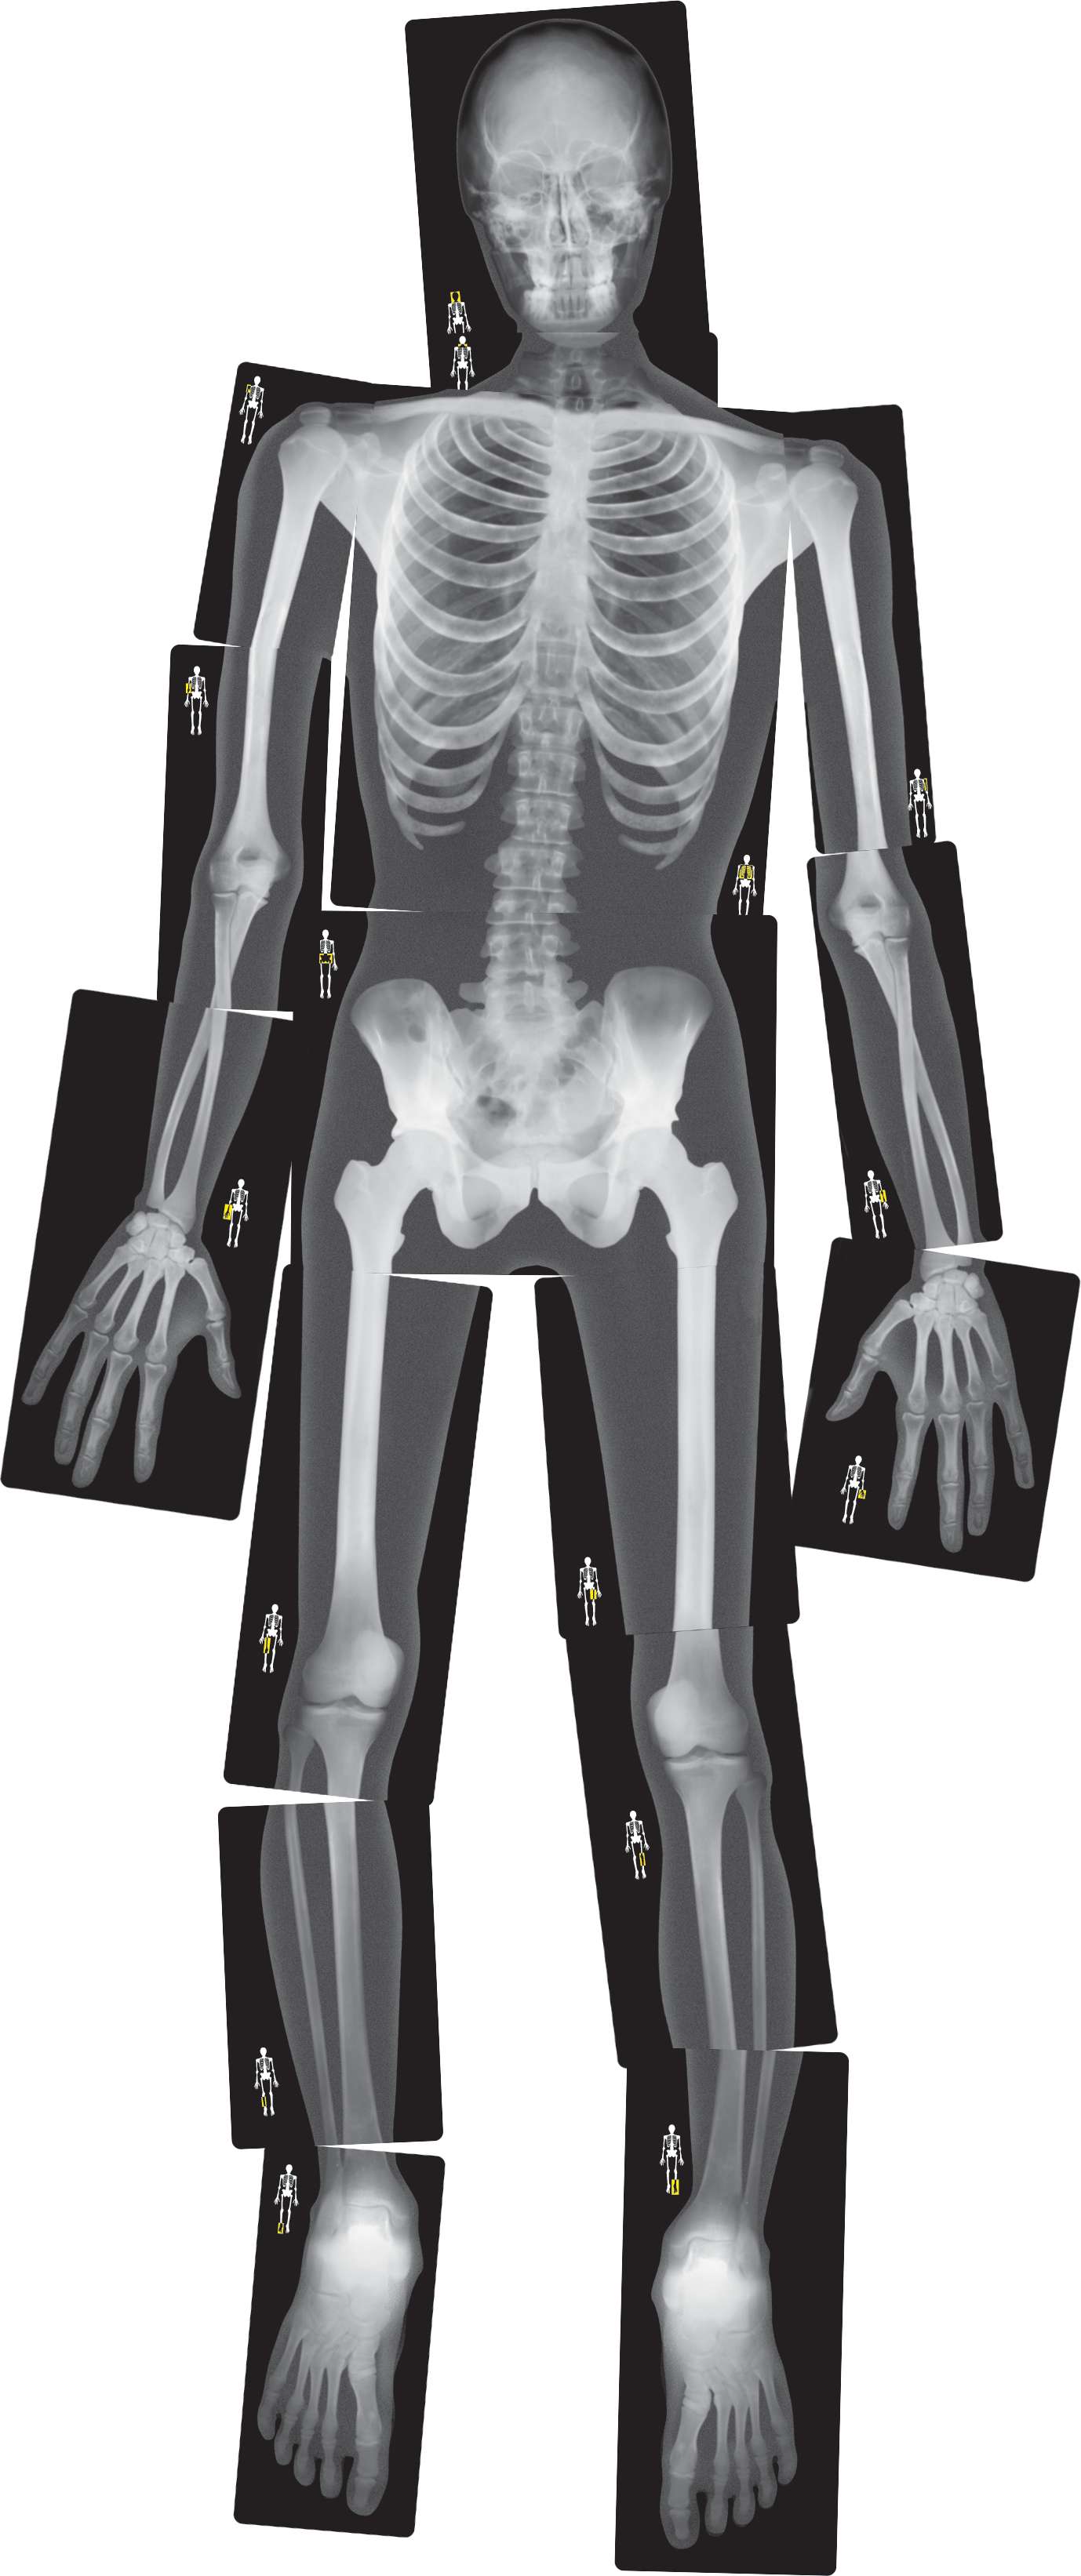 Röntgenbilder Mensch Modelle Biologie Demonstrationsgeräte And Anschauungsmaterialien Schule